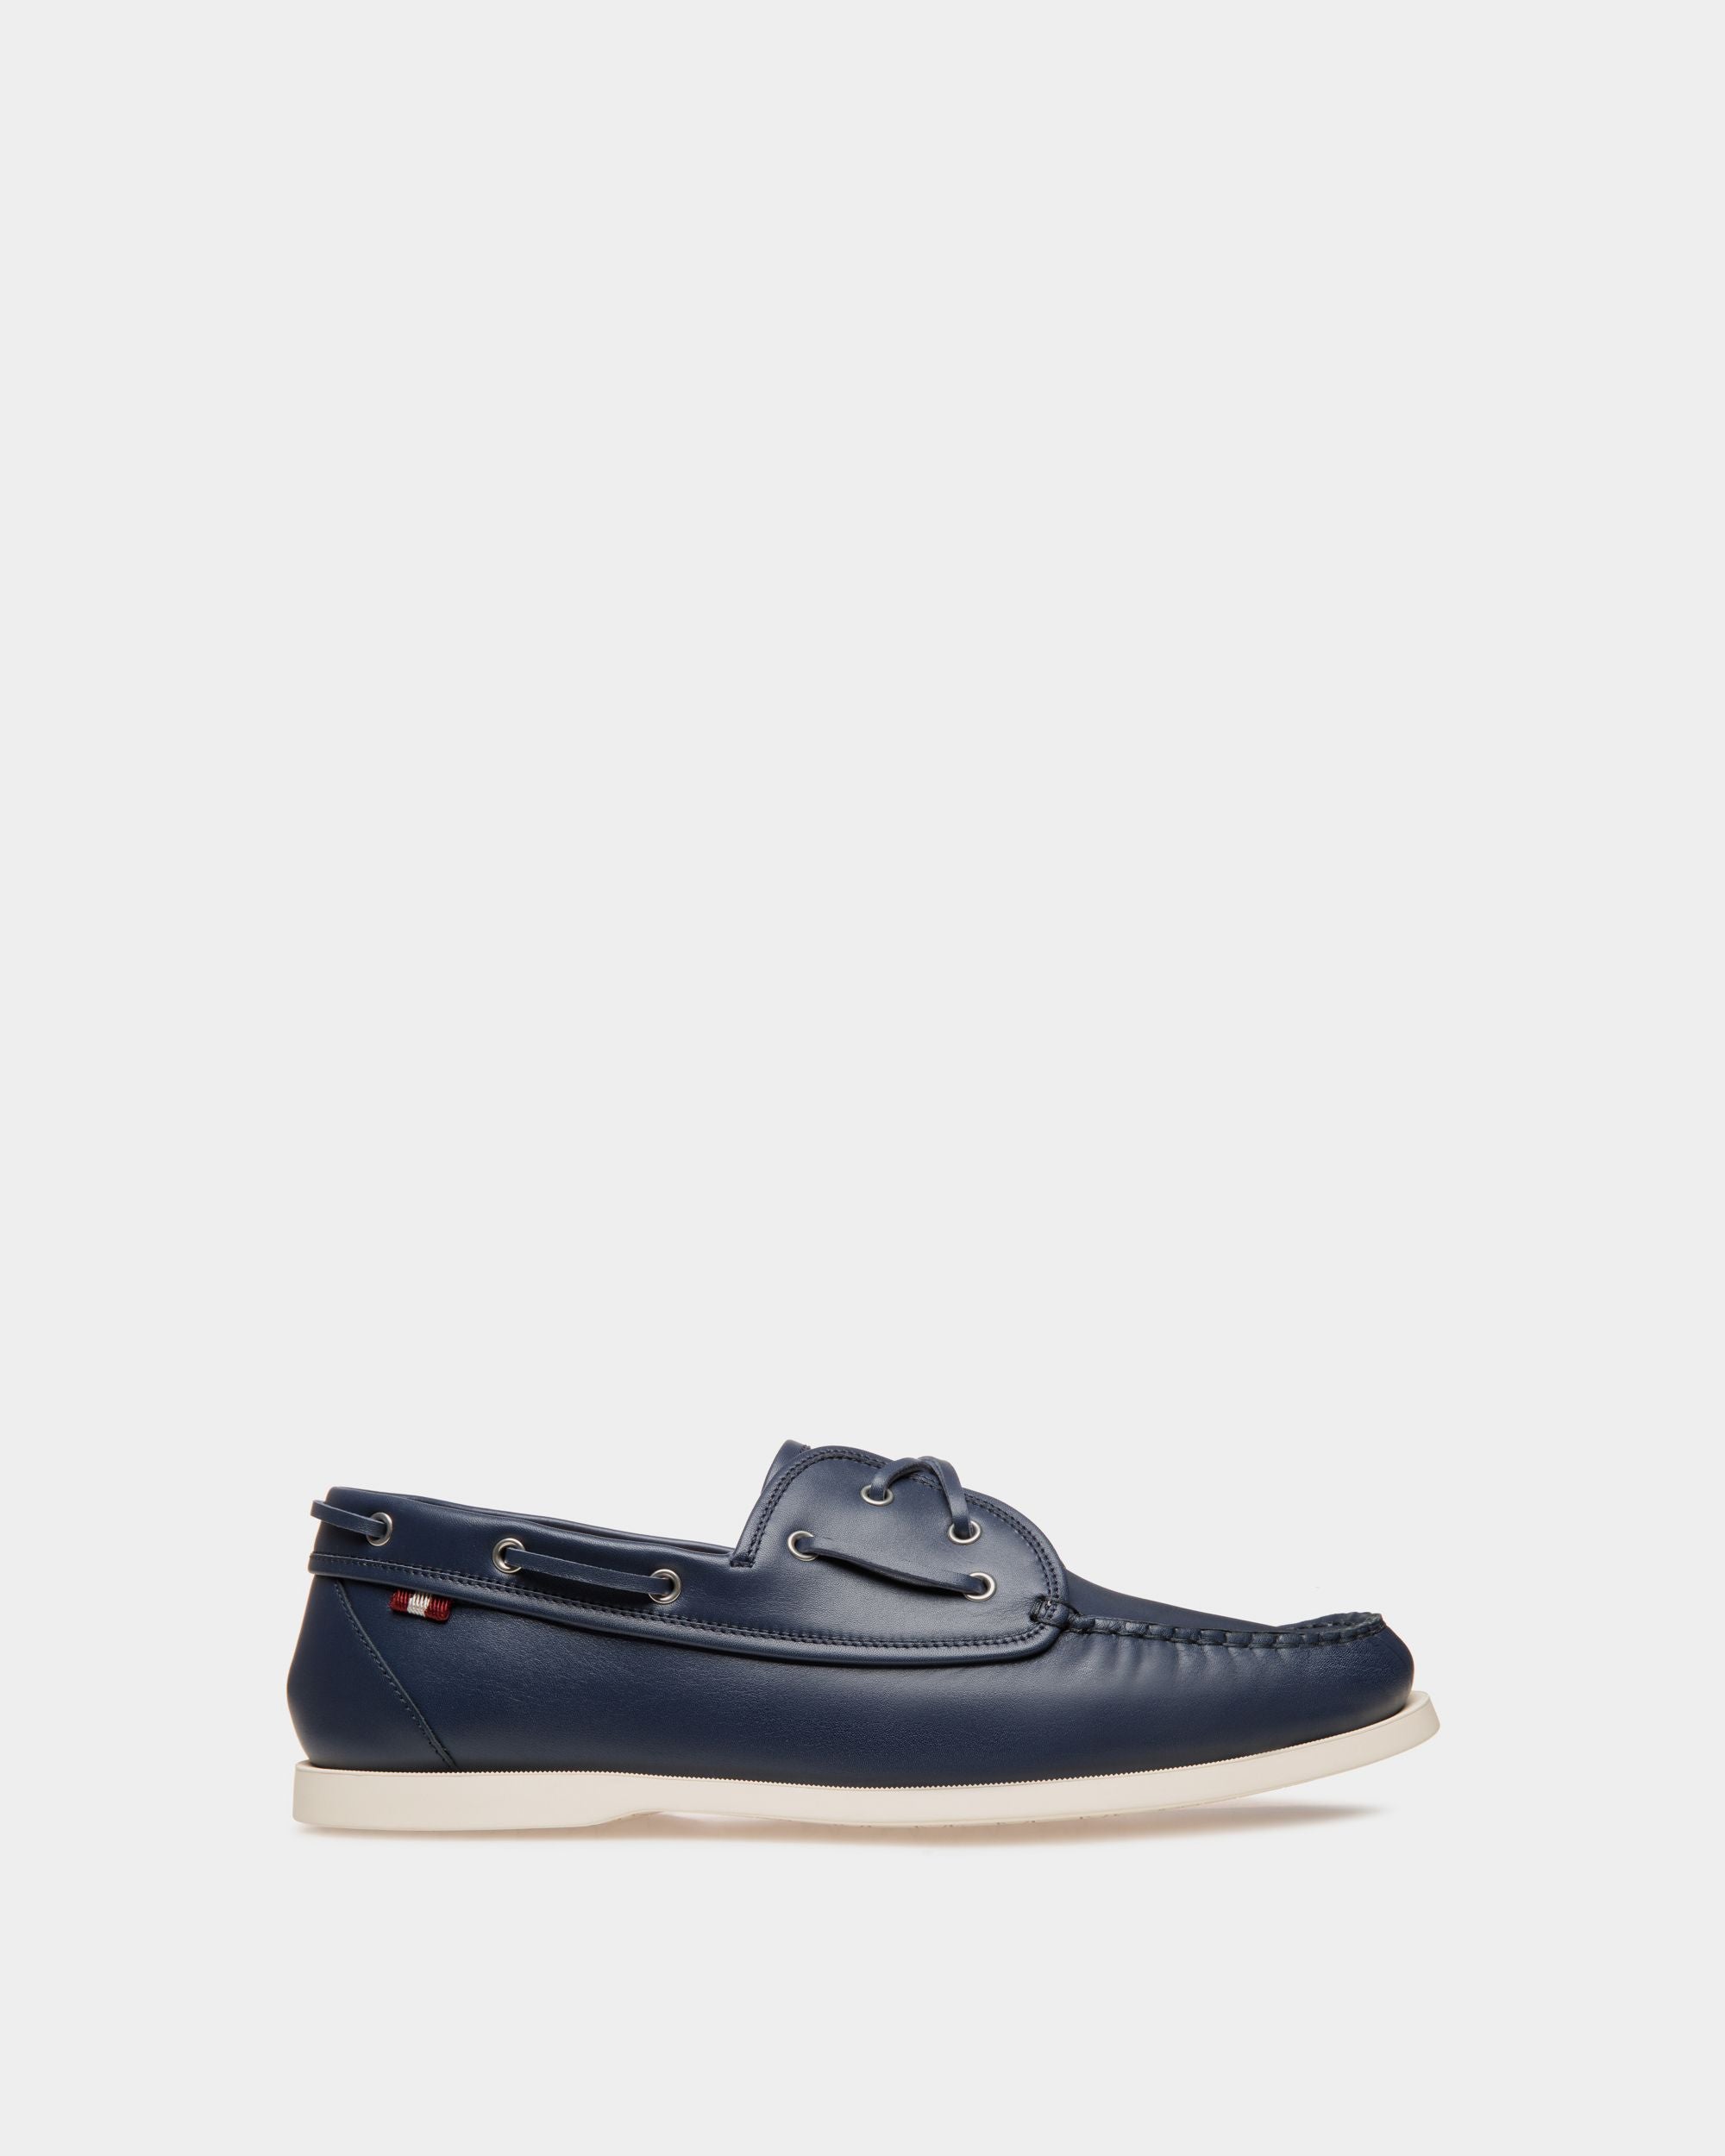 Nelson | Loafer für Herren aus Leder in Blau | Bally | Still Life Seite